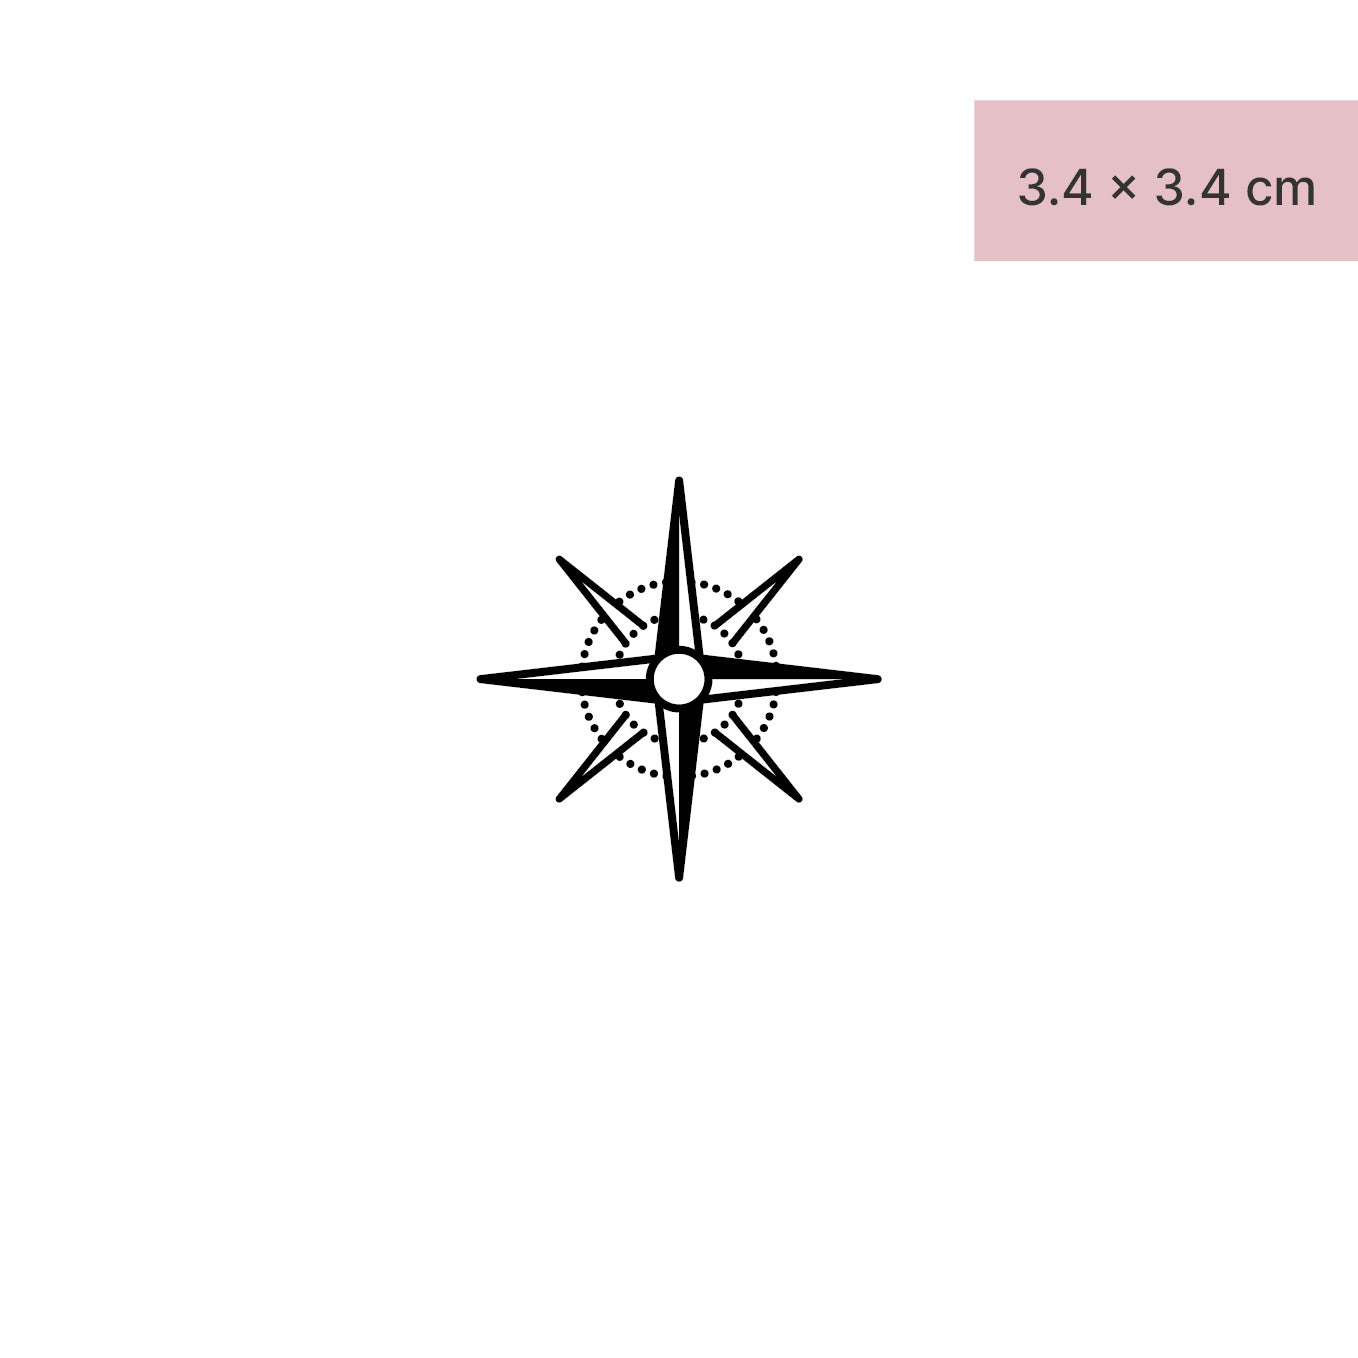 Kompass Stern Tattoo von minink, der Marke für temporäre Tattoos.